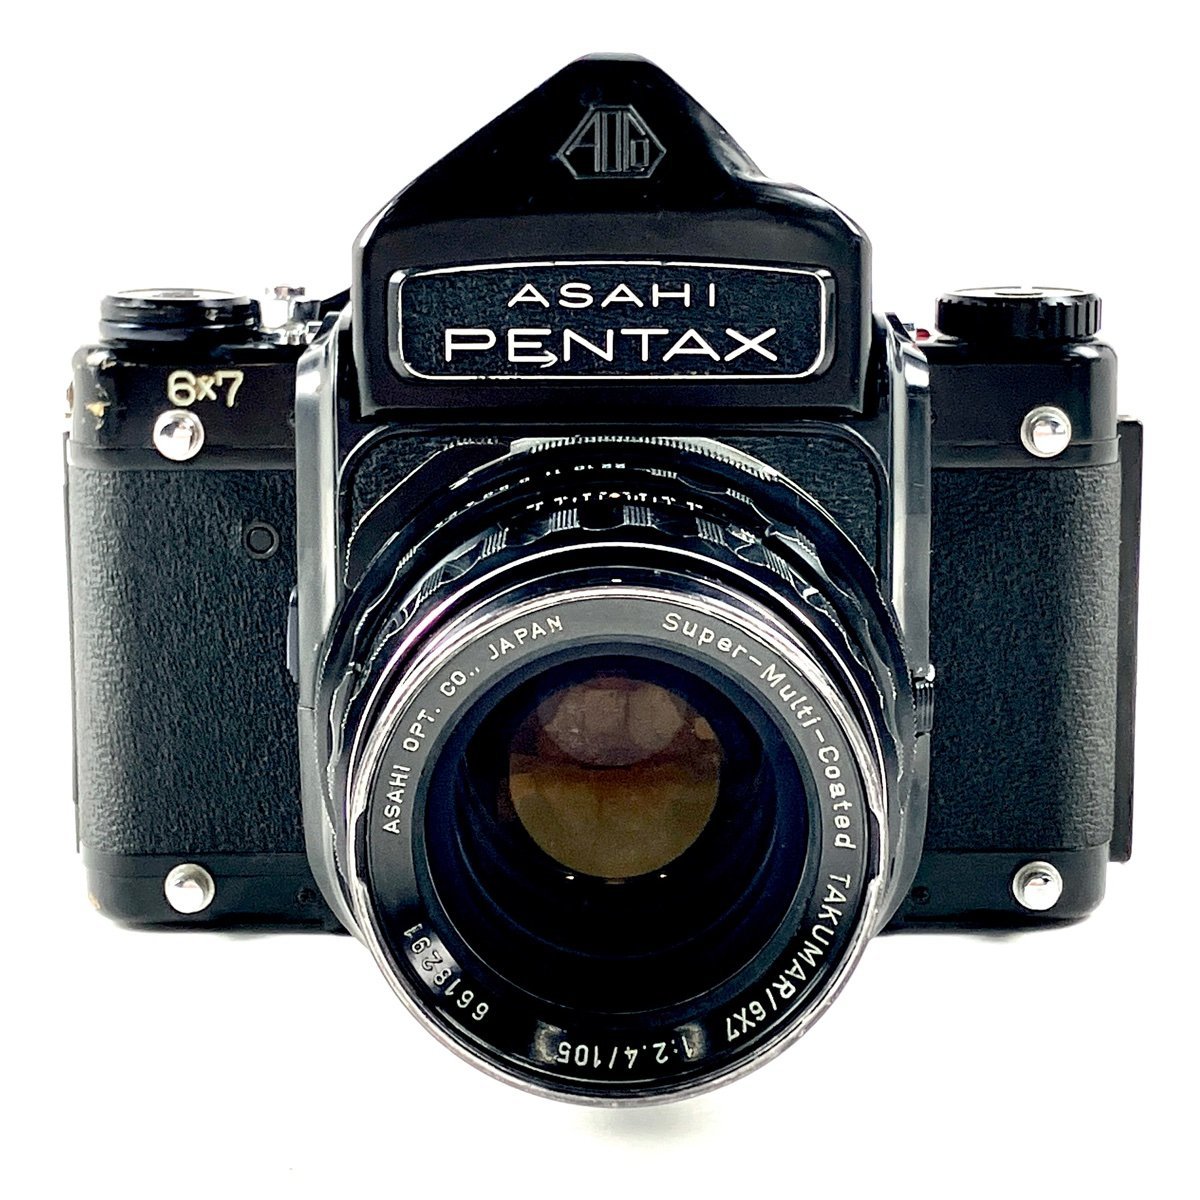 ペンタックス PENTAX 6x7 アイレベル + TAKUMAR 105mm F2.4 67